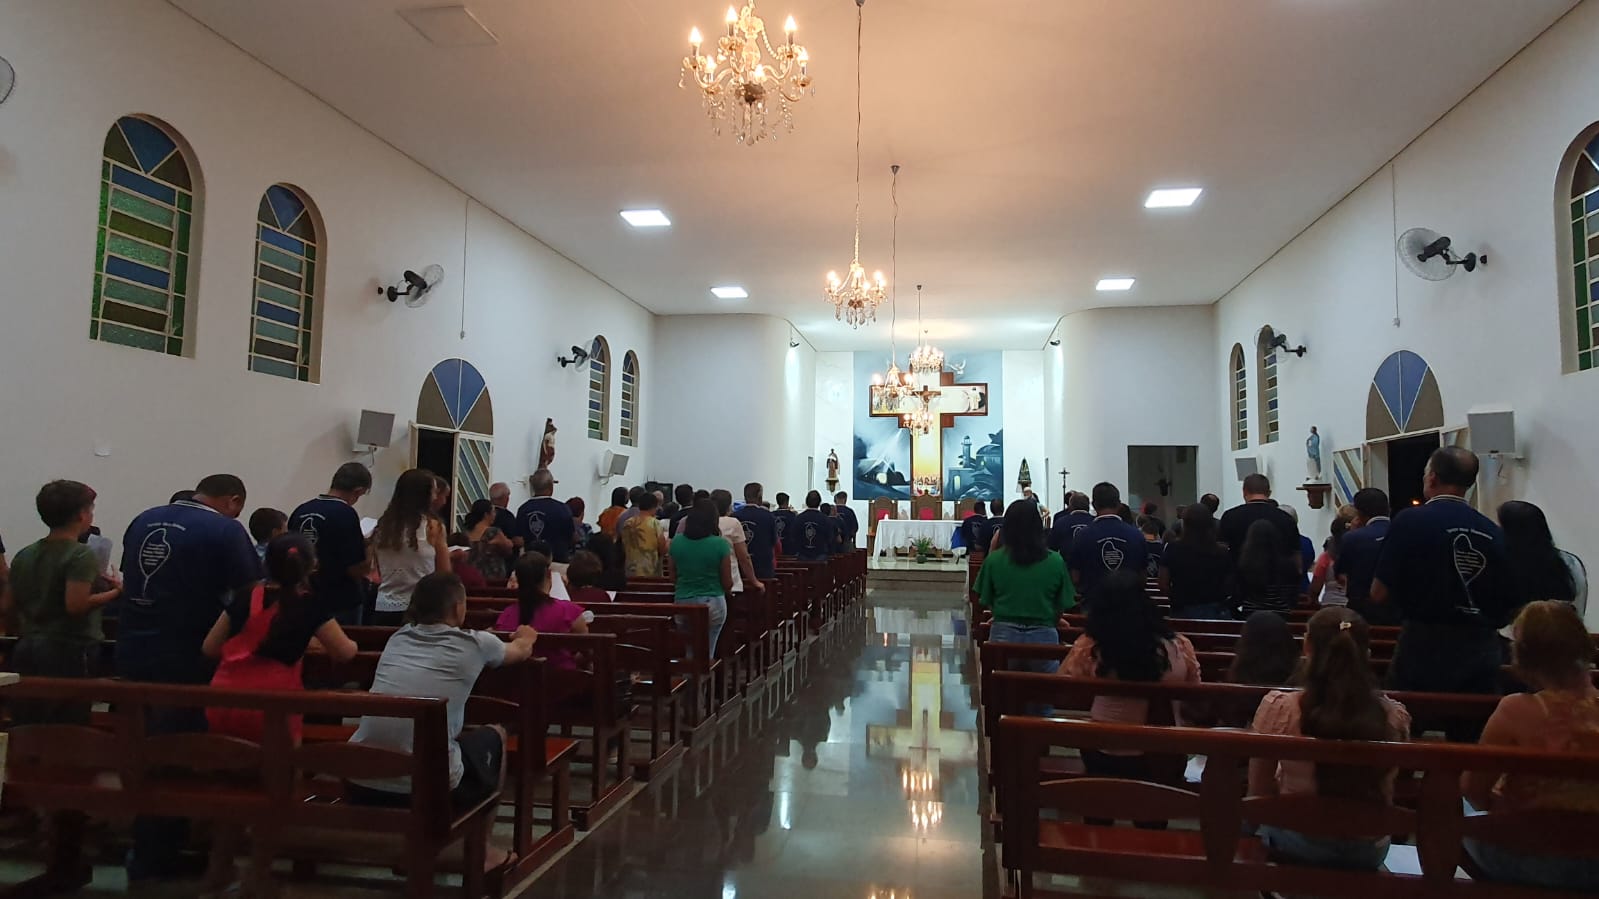 B3 1 - Diocese de Guaxupé Terço dos Homens comemora 9 anos de presença na Paróquia São Benedito, Petúnia.